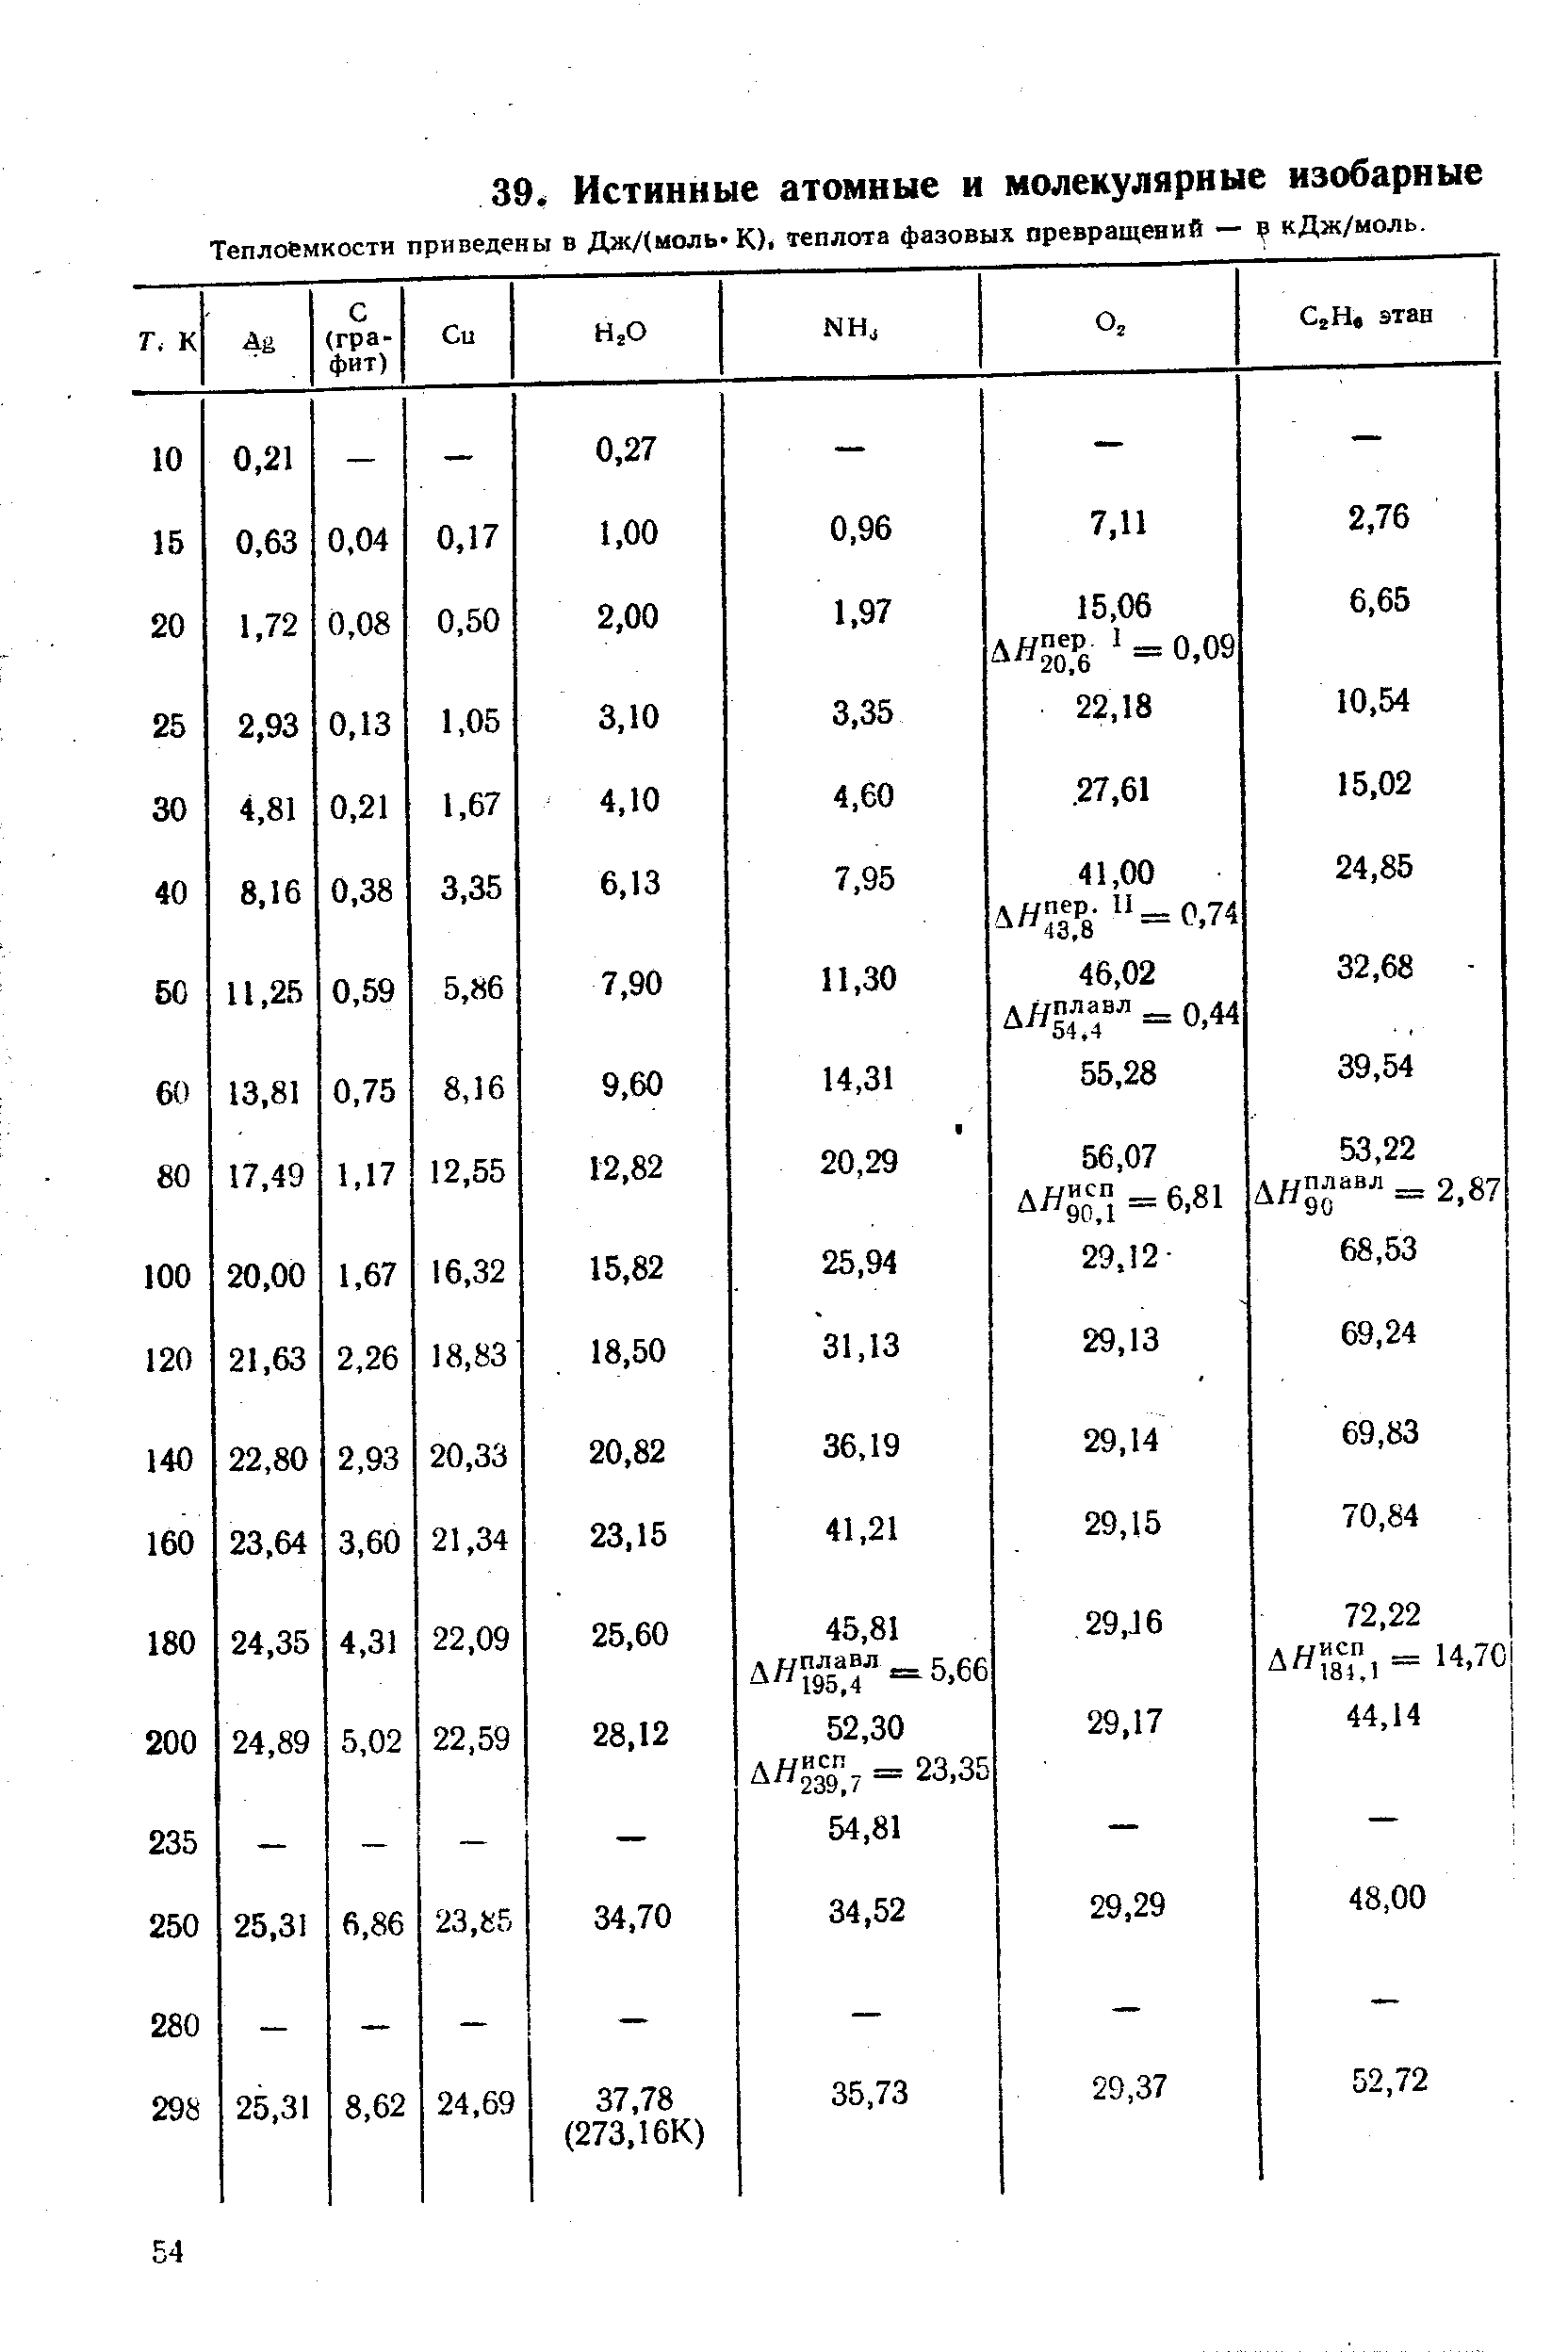 Теплоемкости приведены в Дж/(моль-К)1 теплота фазовых превращений — кДж/моль.